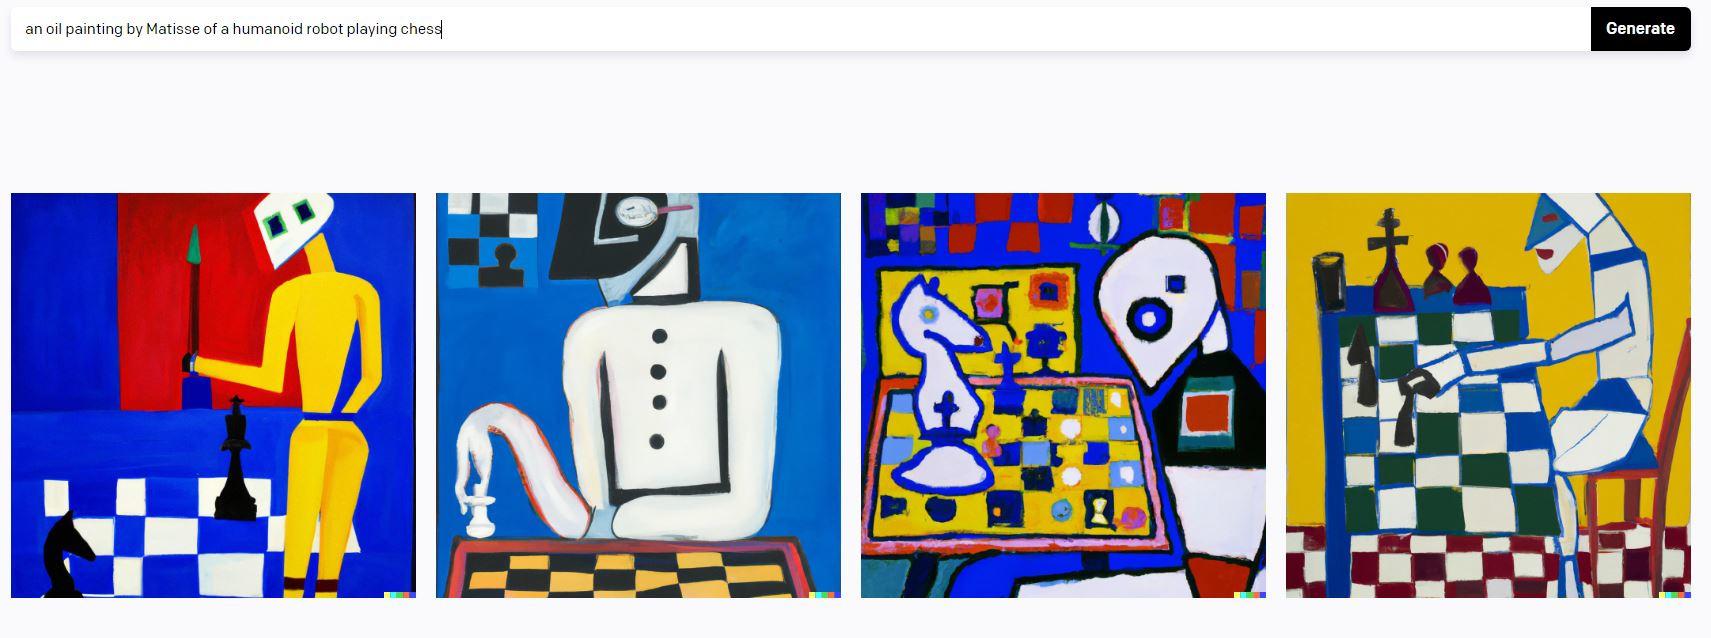 Een voorbeeld van hoe je met DALL-E een schilderij in de stijl van Matisse genereert.